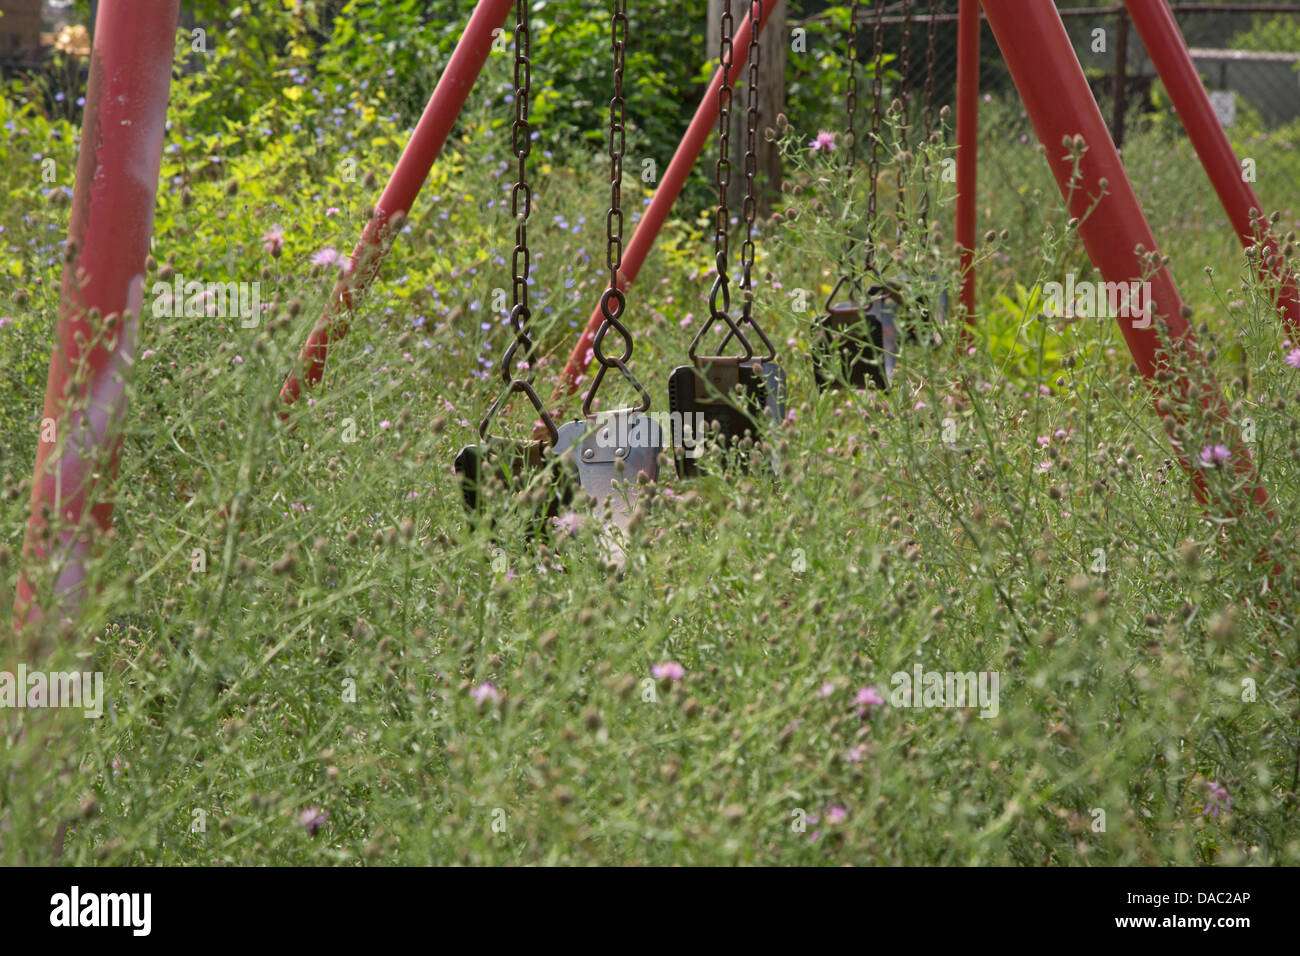 Hamtramck, Michigan - un parco giochi nelle erbacce al parco dei veterani. La città è in emergenza finanziaria. Foto Stock